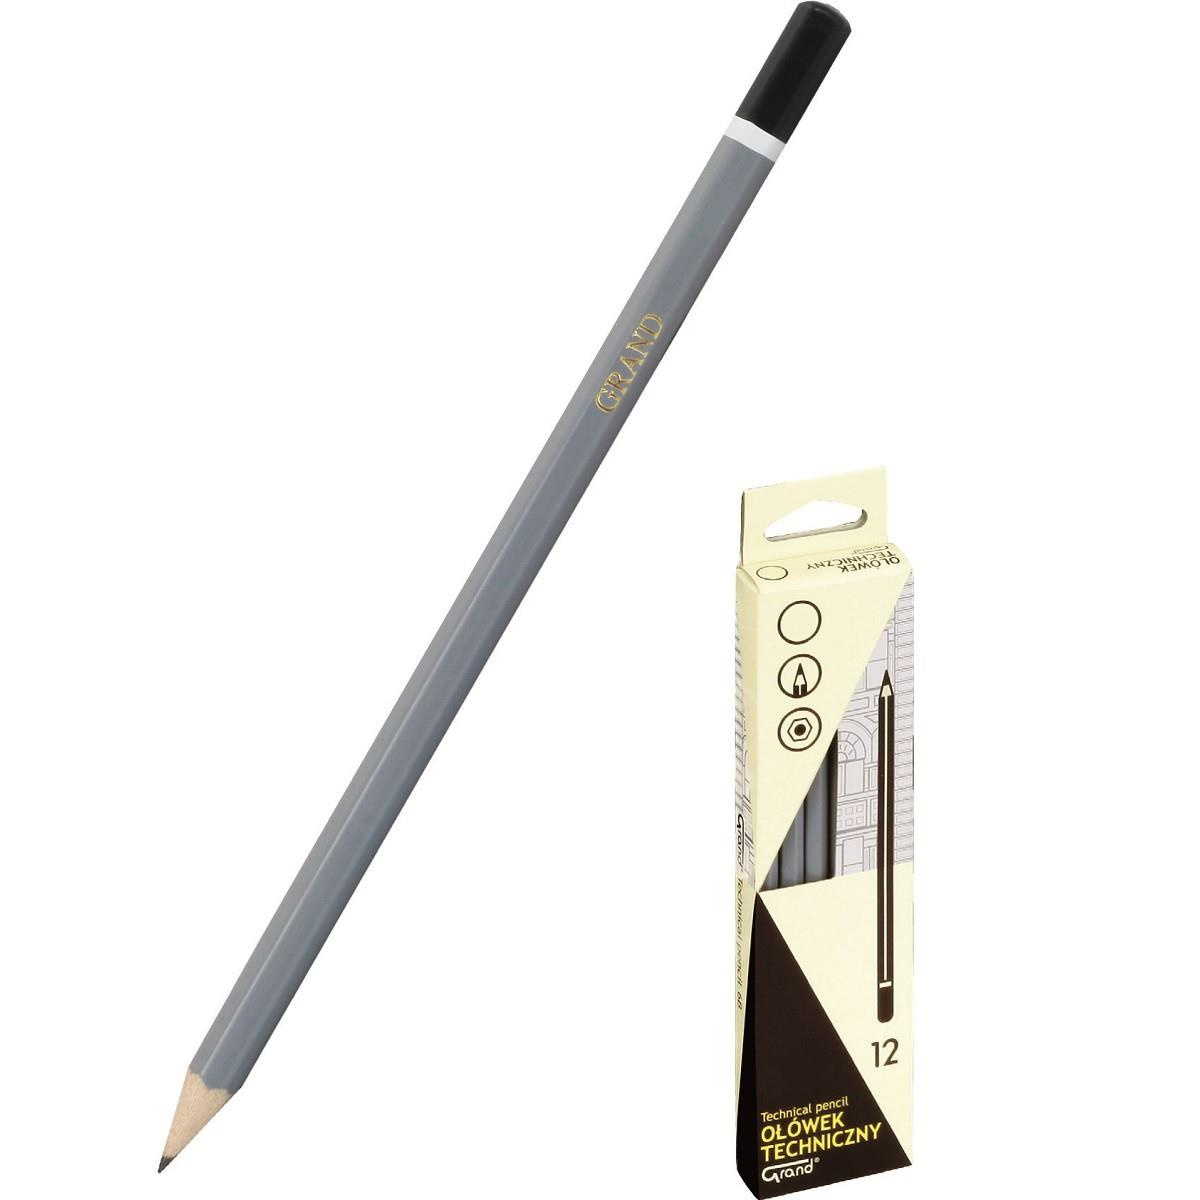 Ołówek techniczny Grand 2B